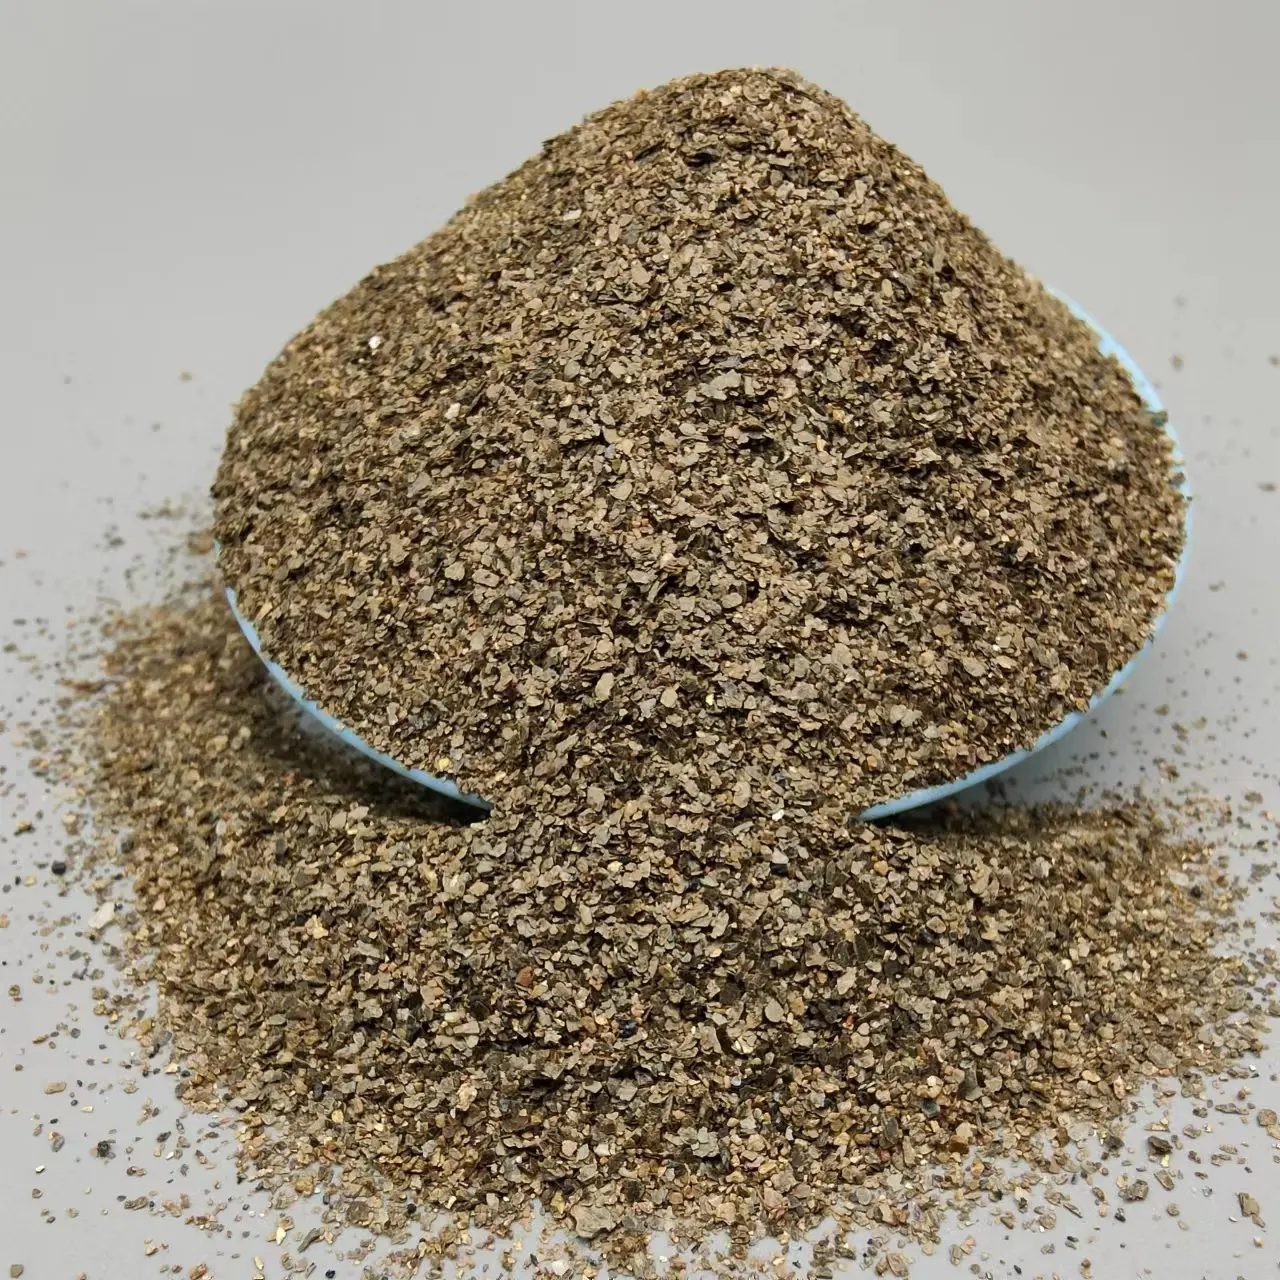 Sản xuất nguyên liệu chất lượng cao cho Vàng thô, quặng vermiculite, 0.3-2mm và vảy vermiculite chưa được khai thác